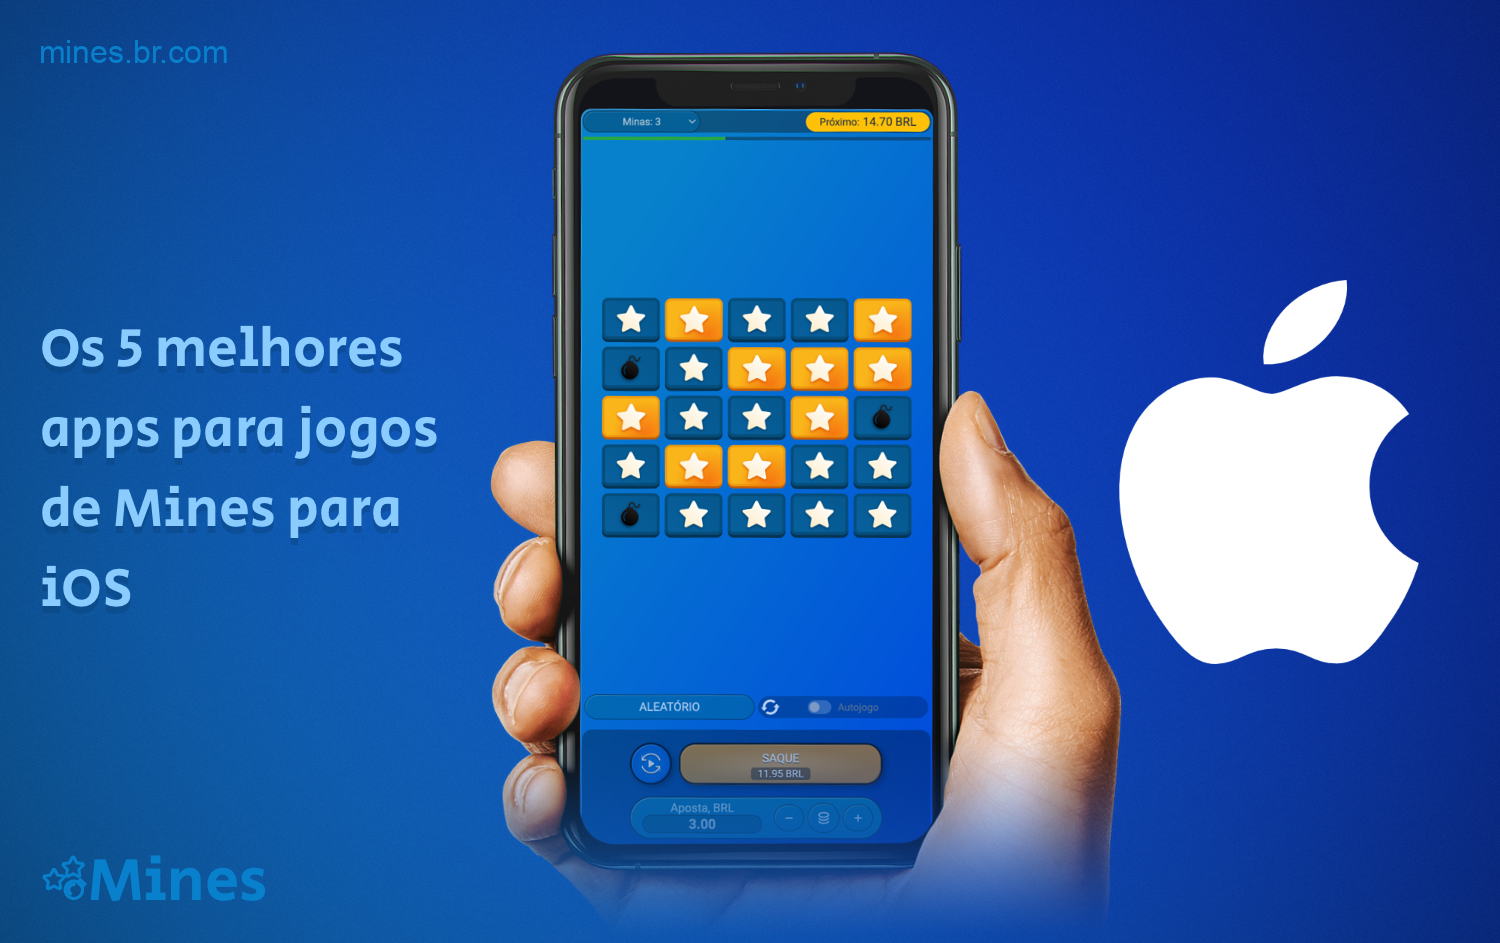 Usuários brasileiros têm acesso ao melhor aplicativo de jogos de Mines para iOS